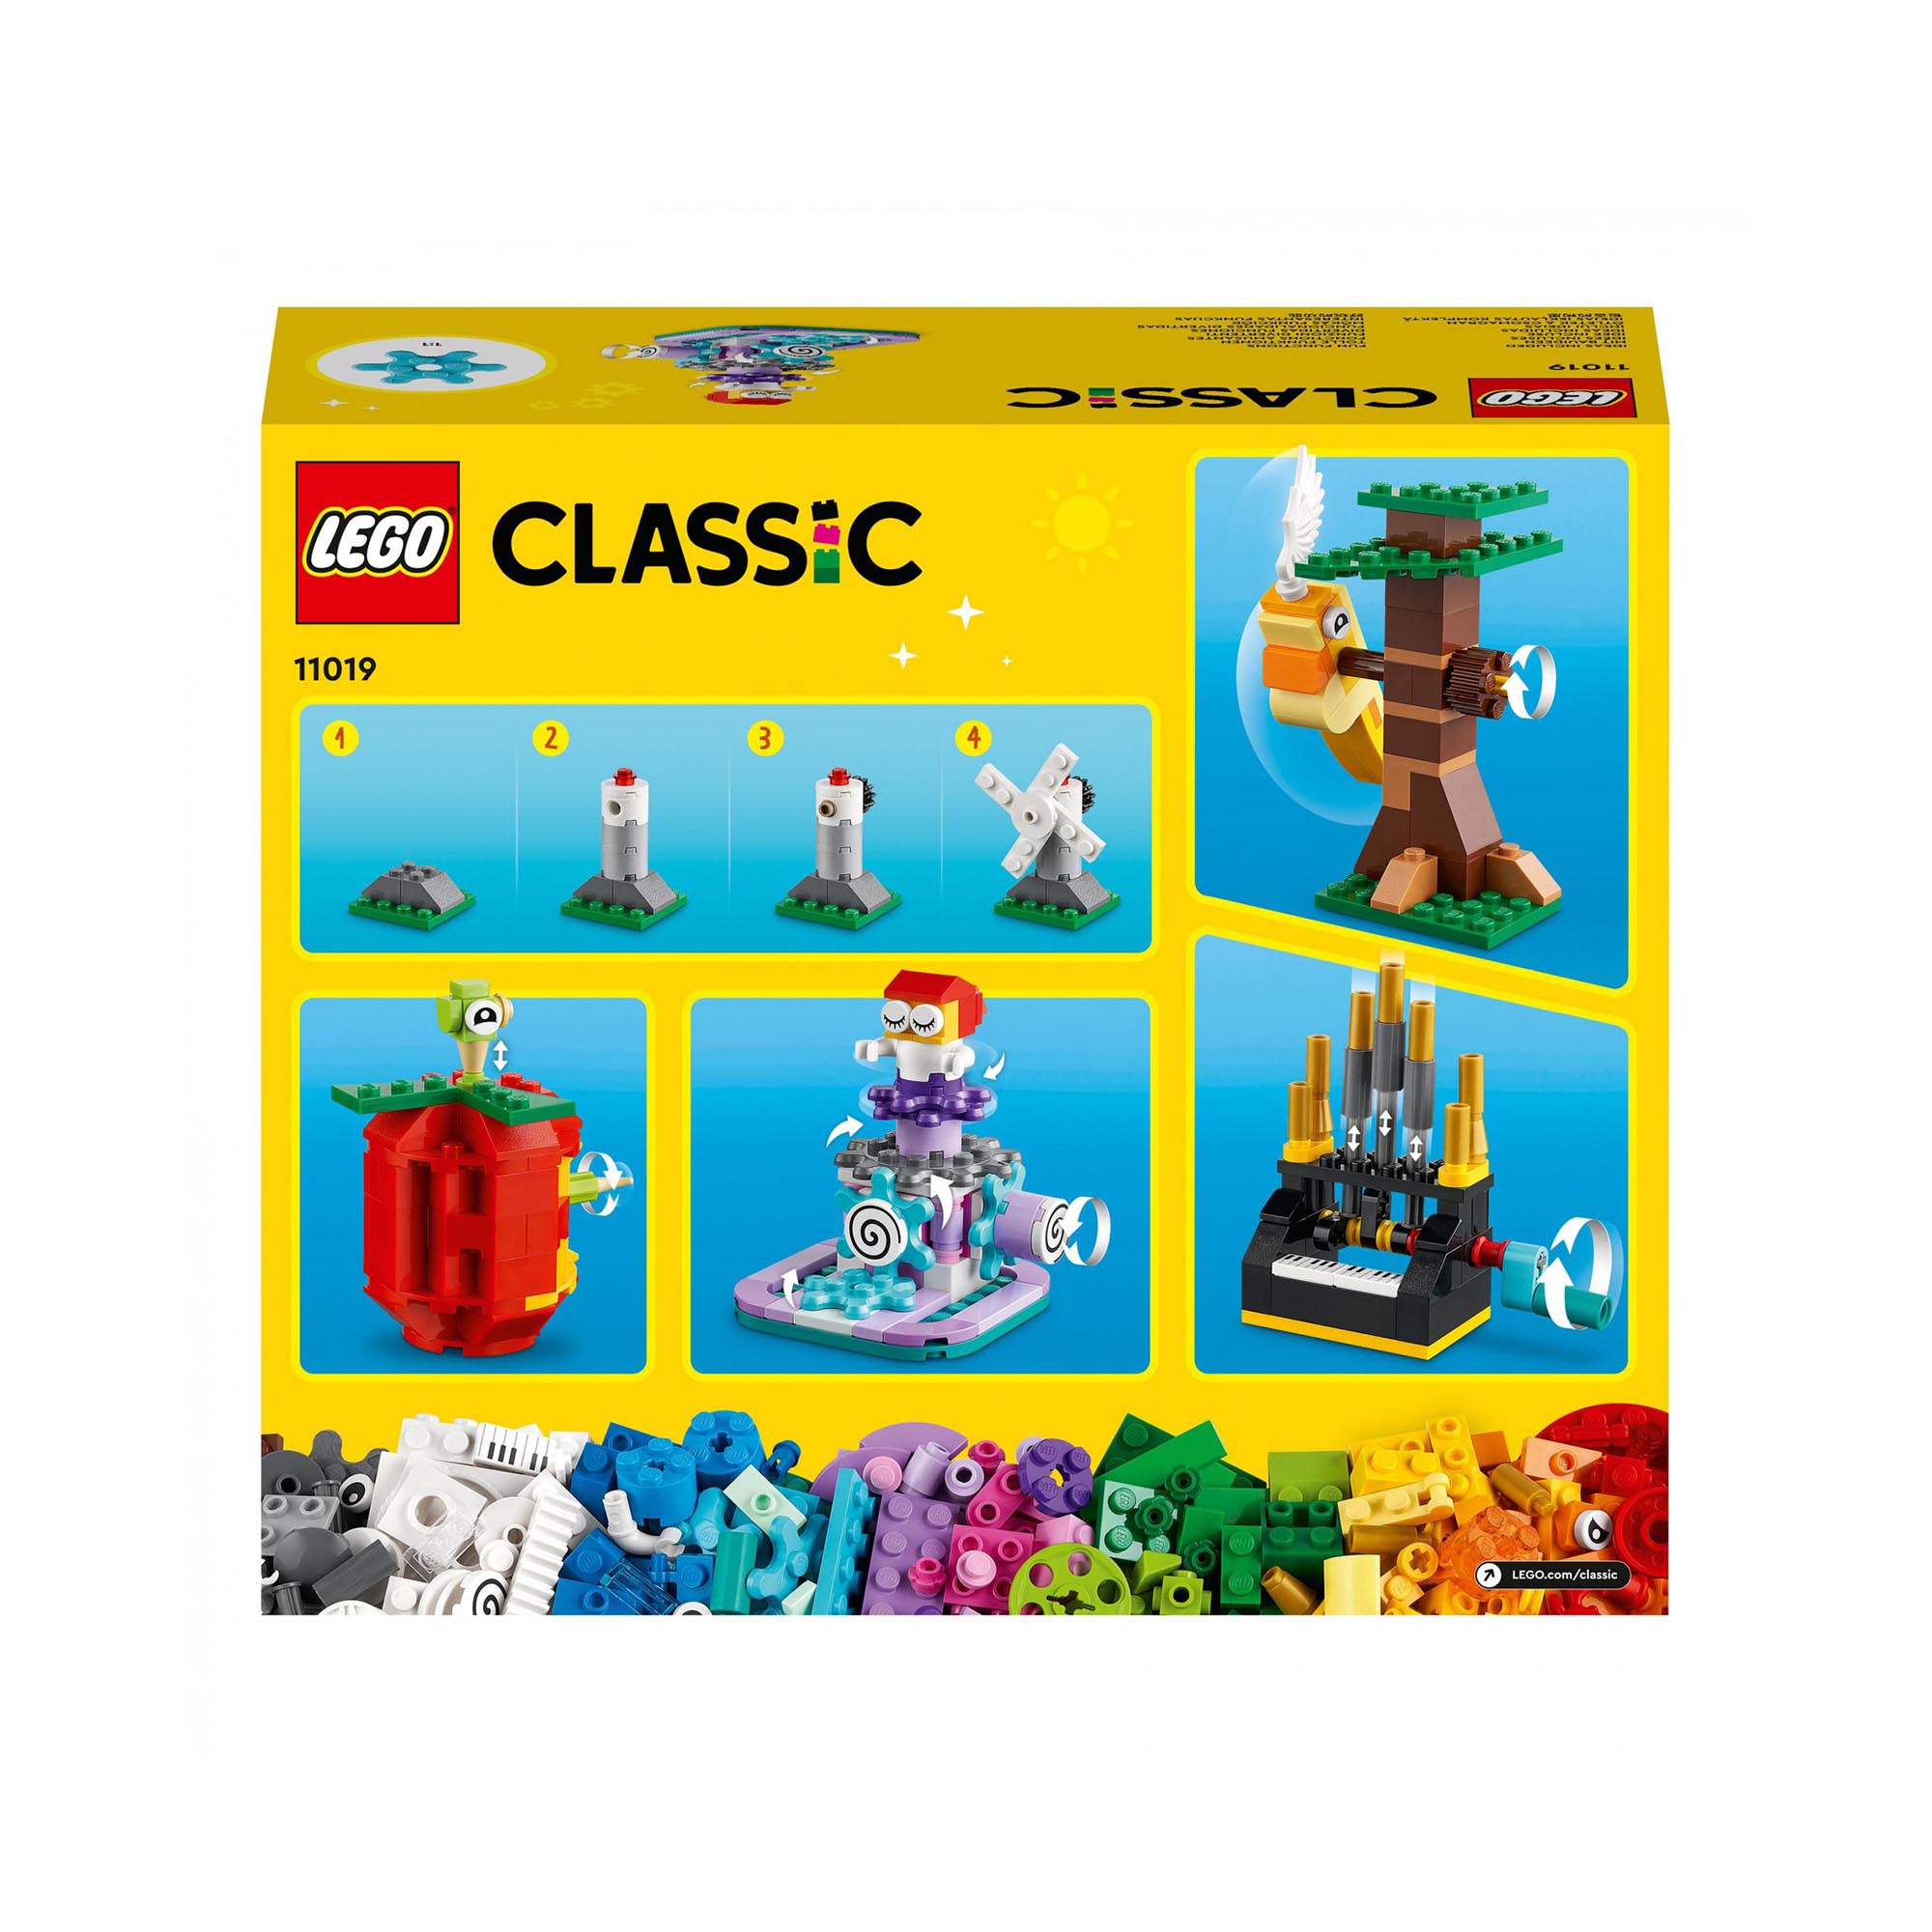 LEGO Classic Mattoncini e Funzioni, Giocattoli Creativi, 7 Mini Costruzioni con  11019, , large